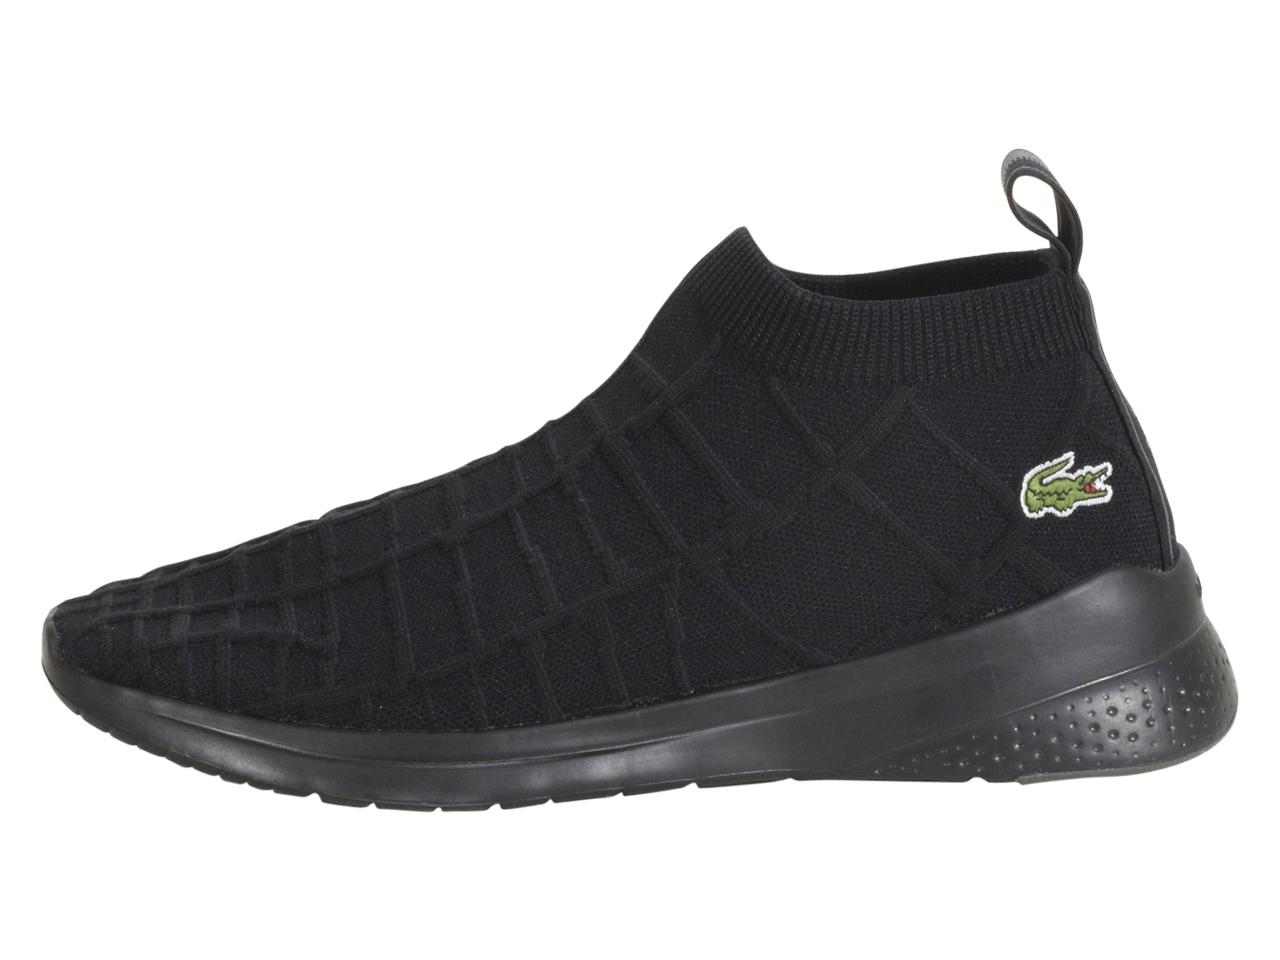 Lacoste LT-Fit-Sock-319 Sneakers Men's Trainers Shoes JoyLot.com